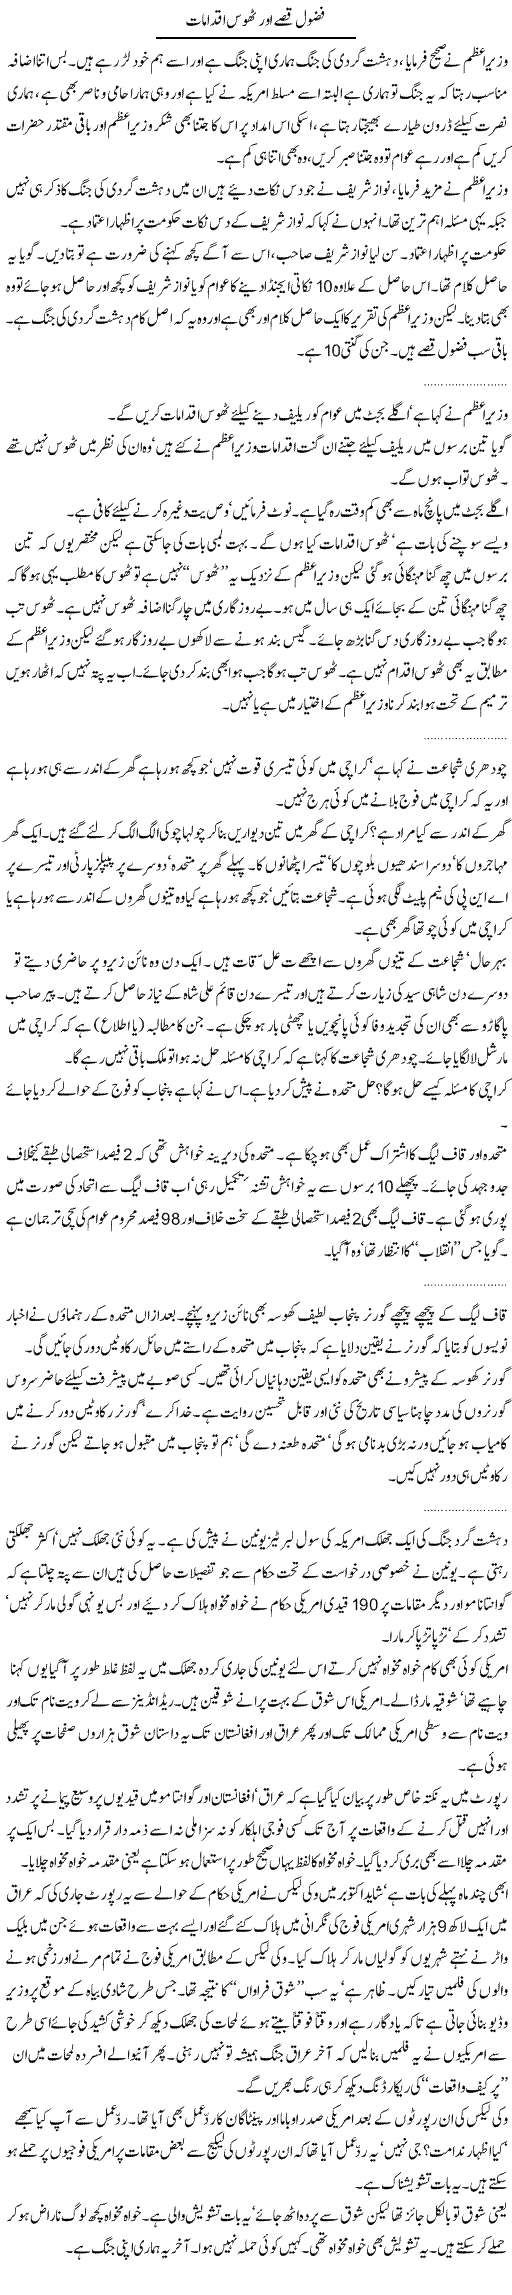 Baseless Stories Express Column Abdullah Tariq 25 January 2011